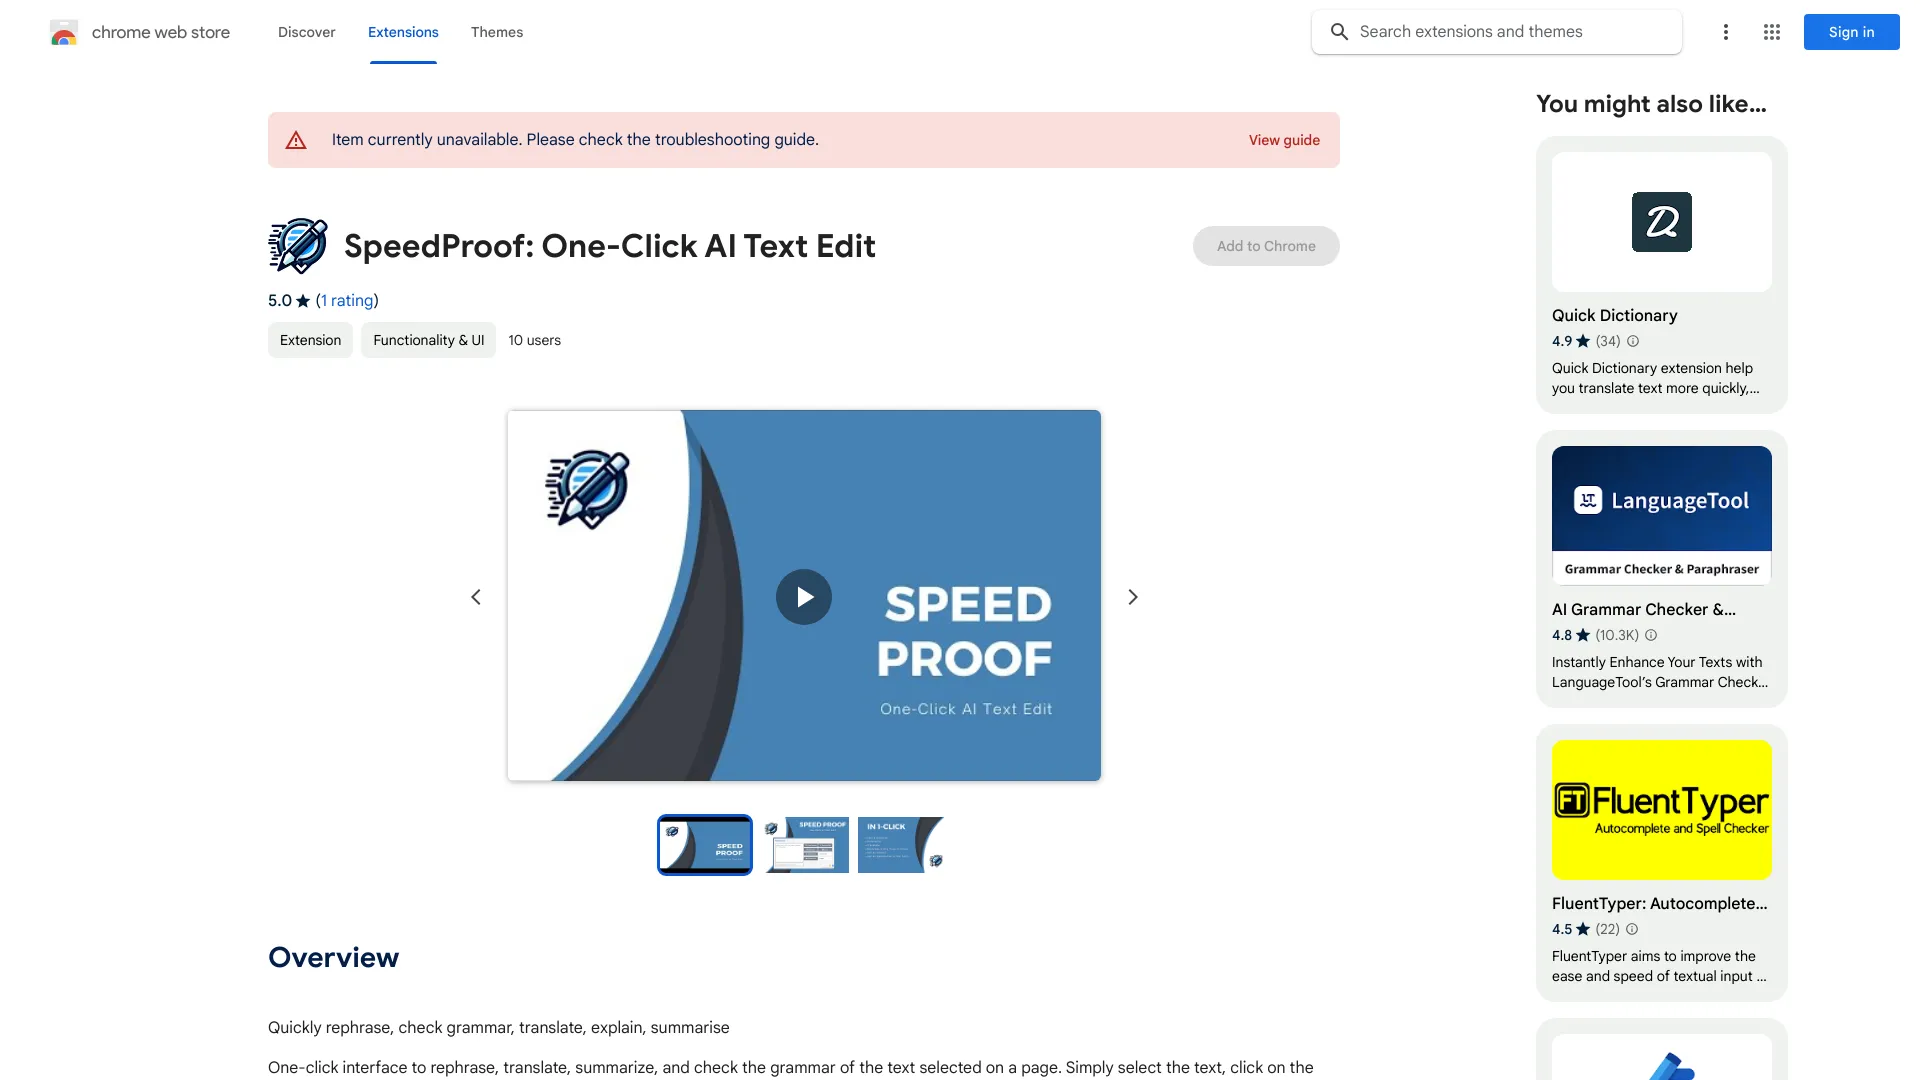 SpeedProof: KI-Textbearbeitung mit einem Klick